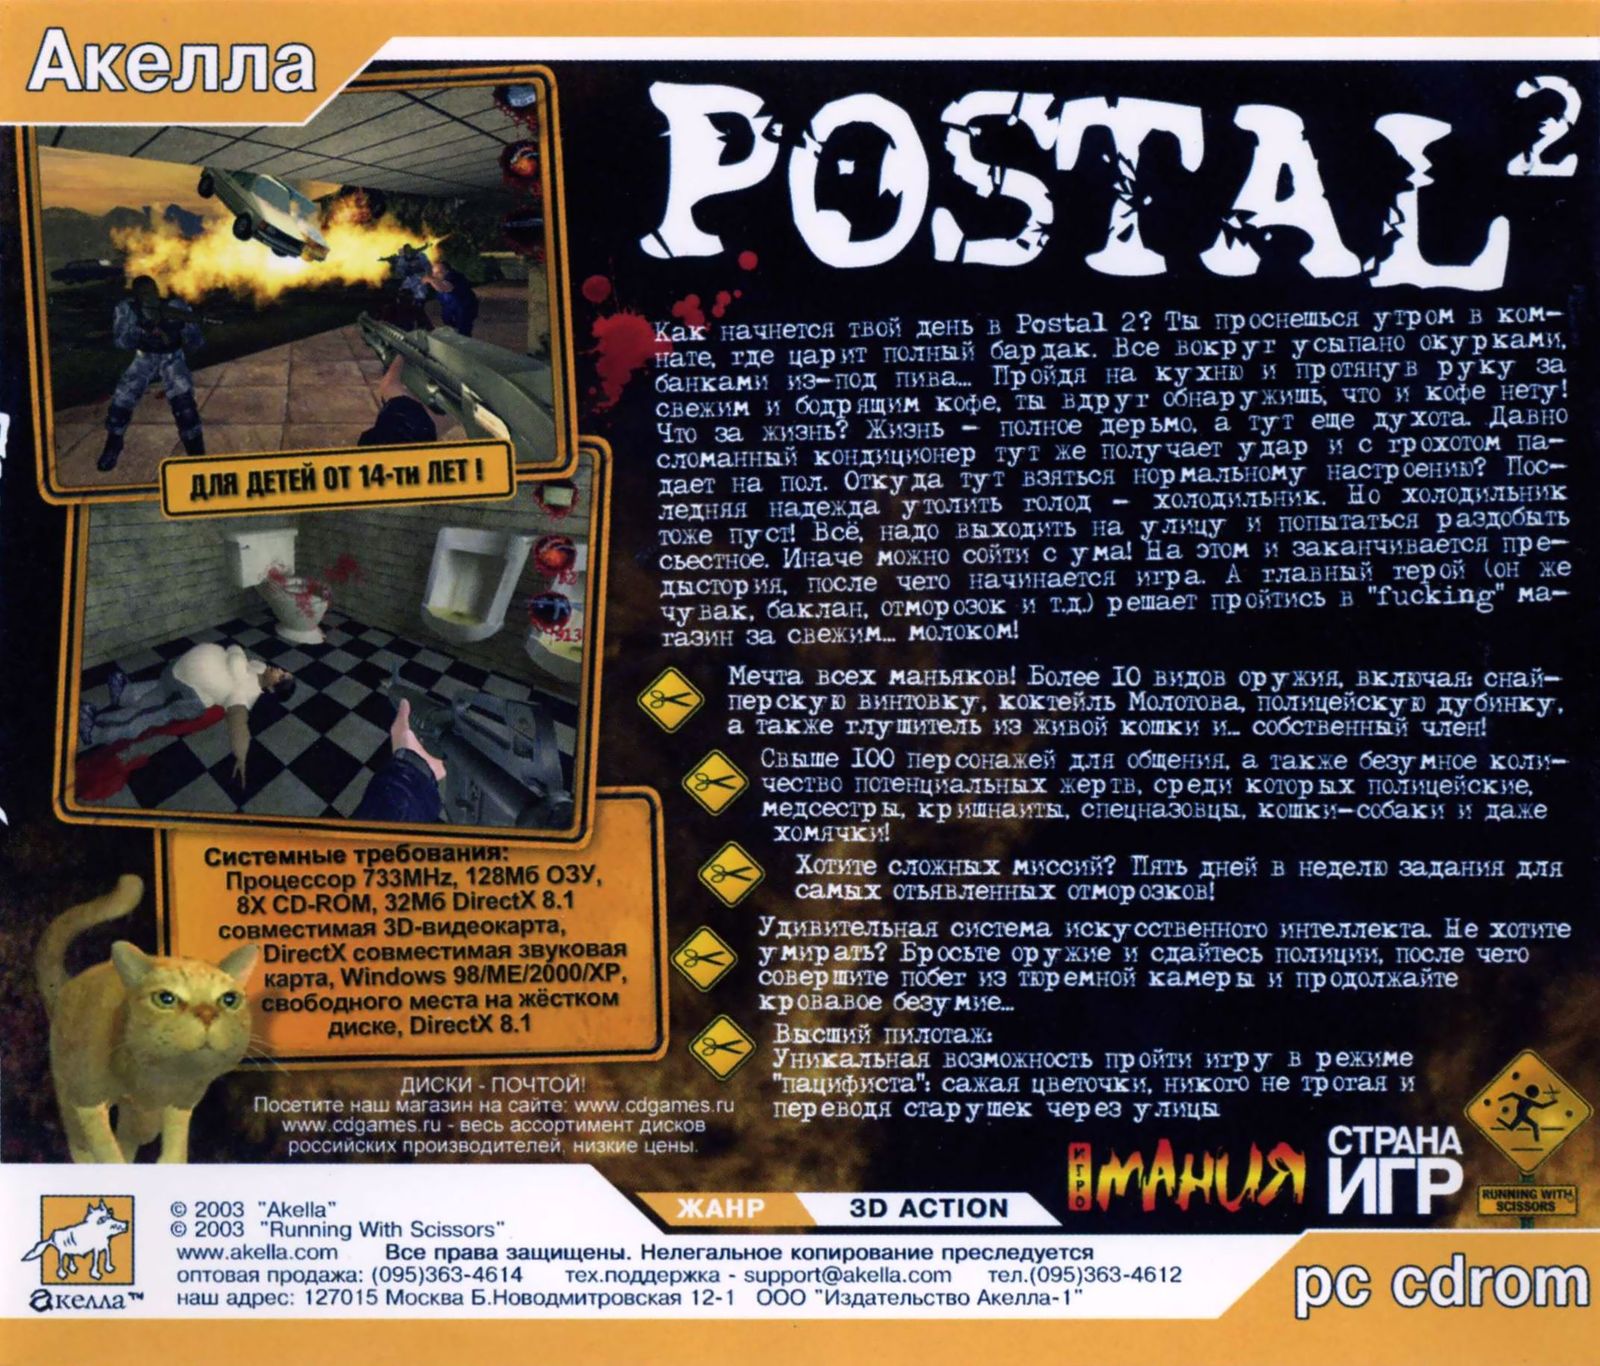 Postal awp delete review фото 75